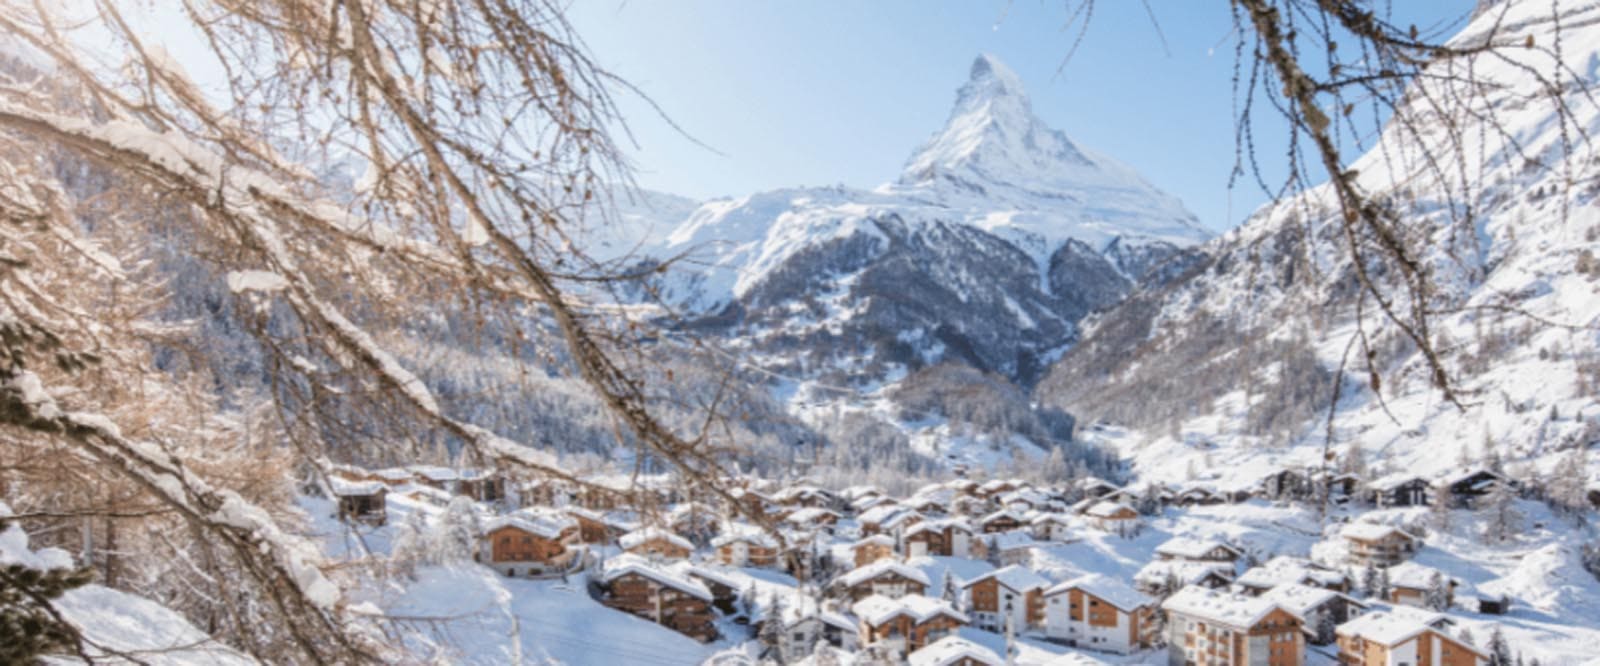 A view over the Swiss ski resort of Zermatt with the Matterhorn behind